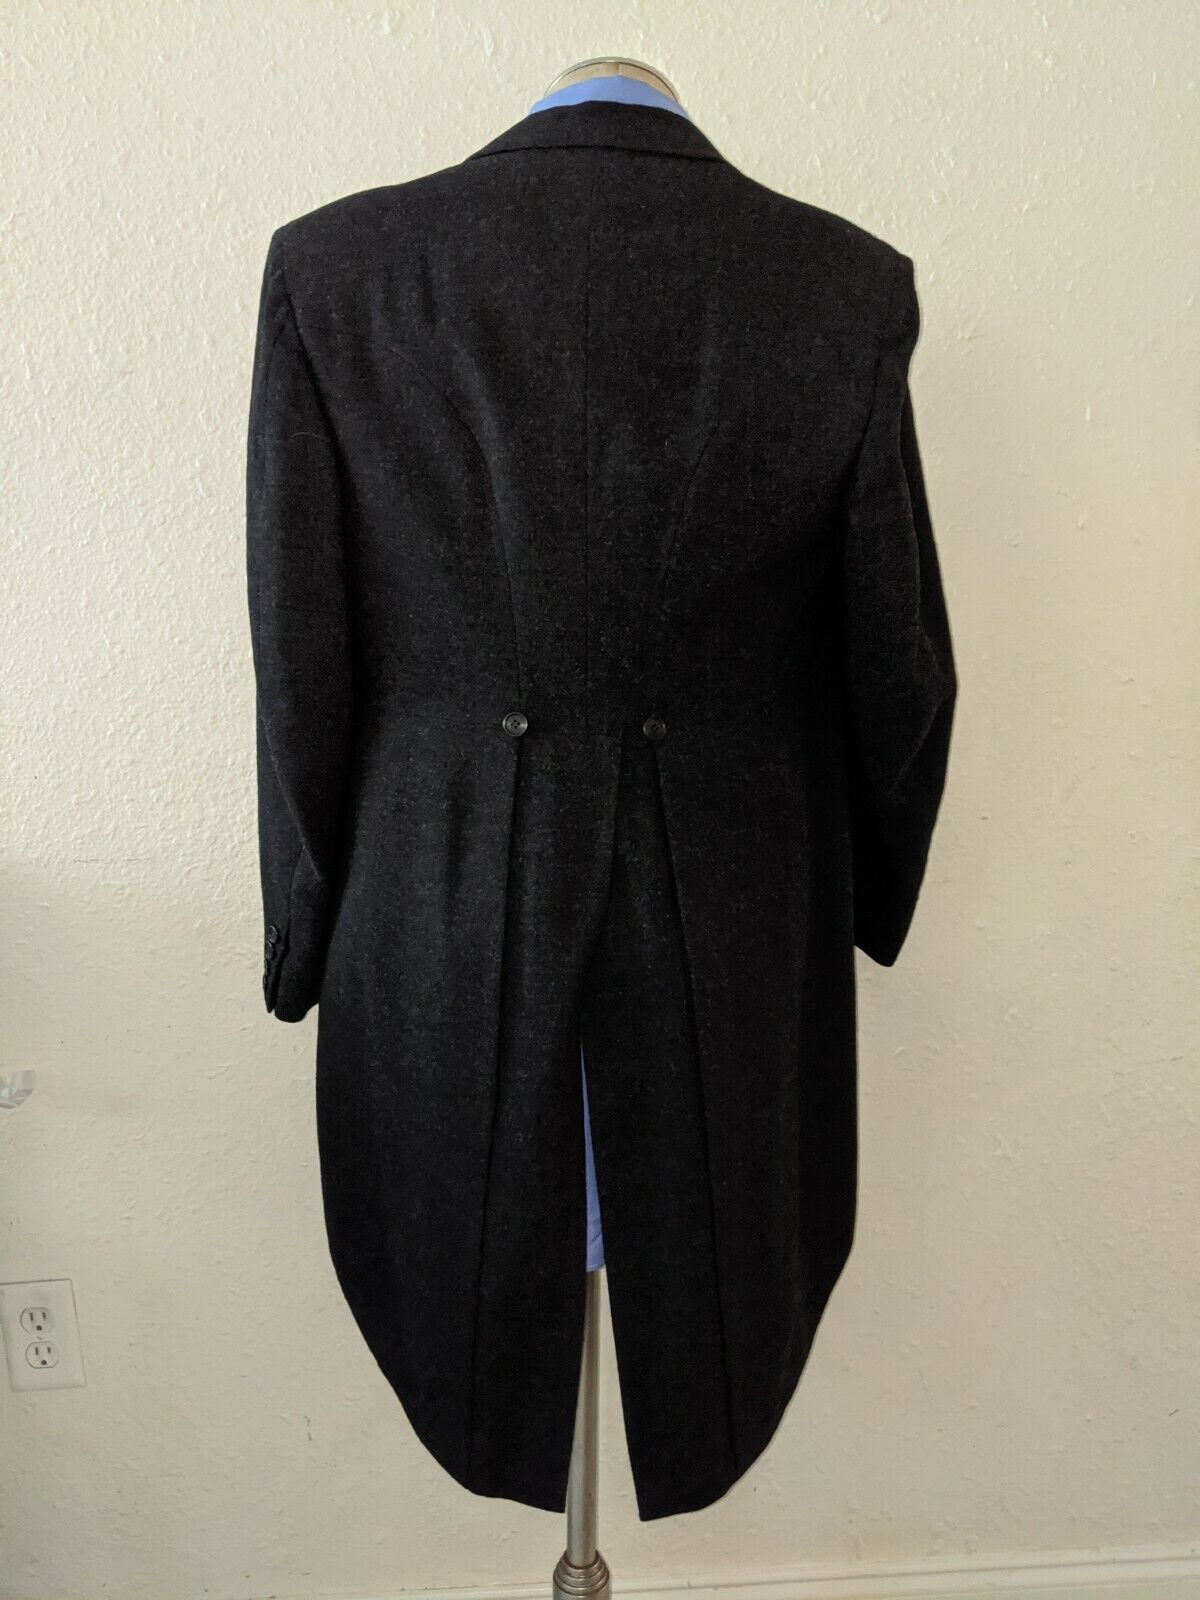 RARE 1940s 42S Hickey Freeman Tailcoat Victorian Gray Tweed Jacket Frock  Coat | eBay